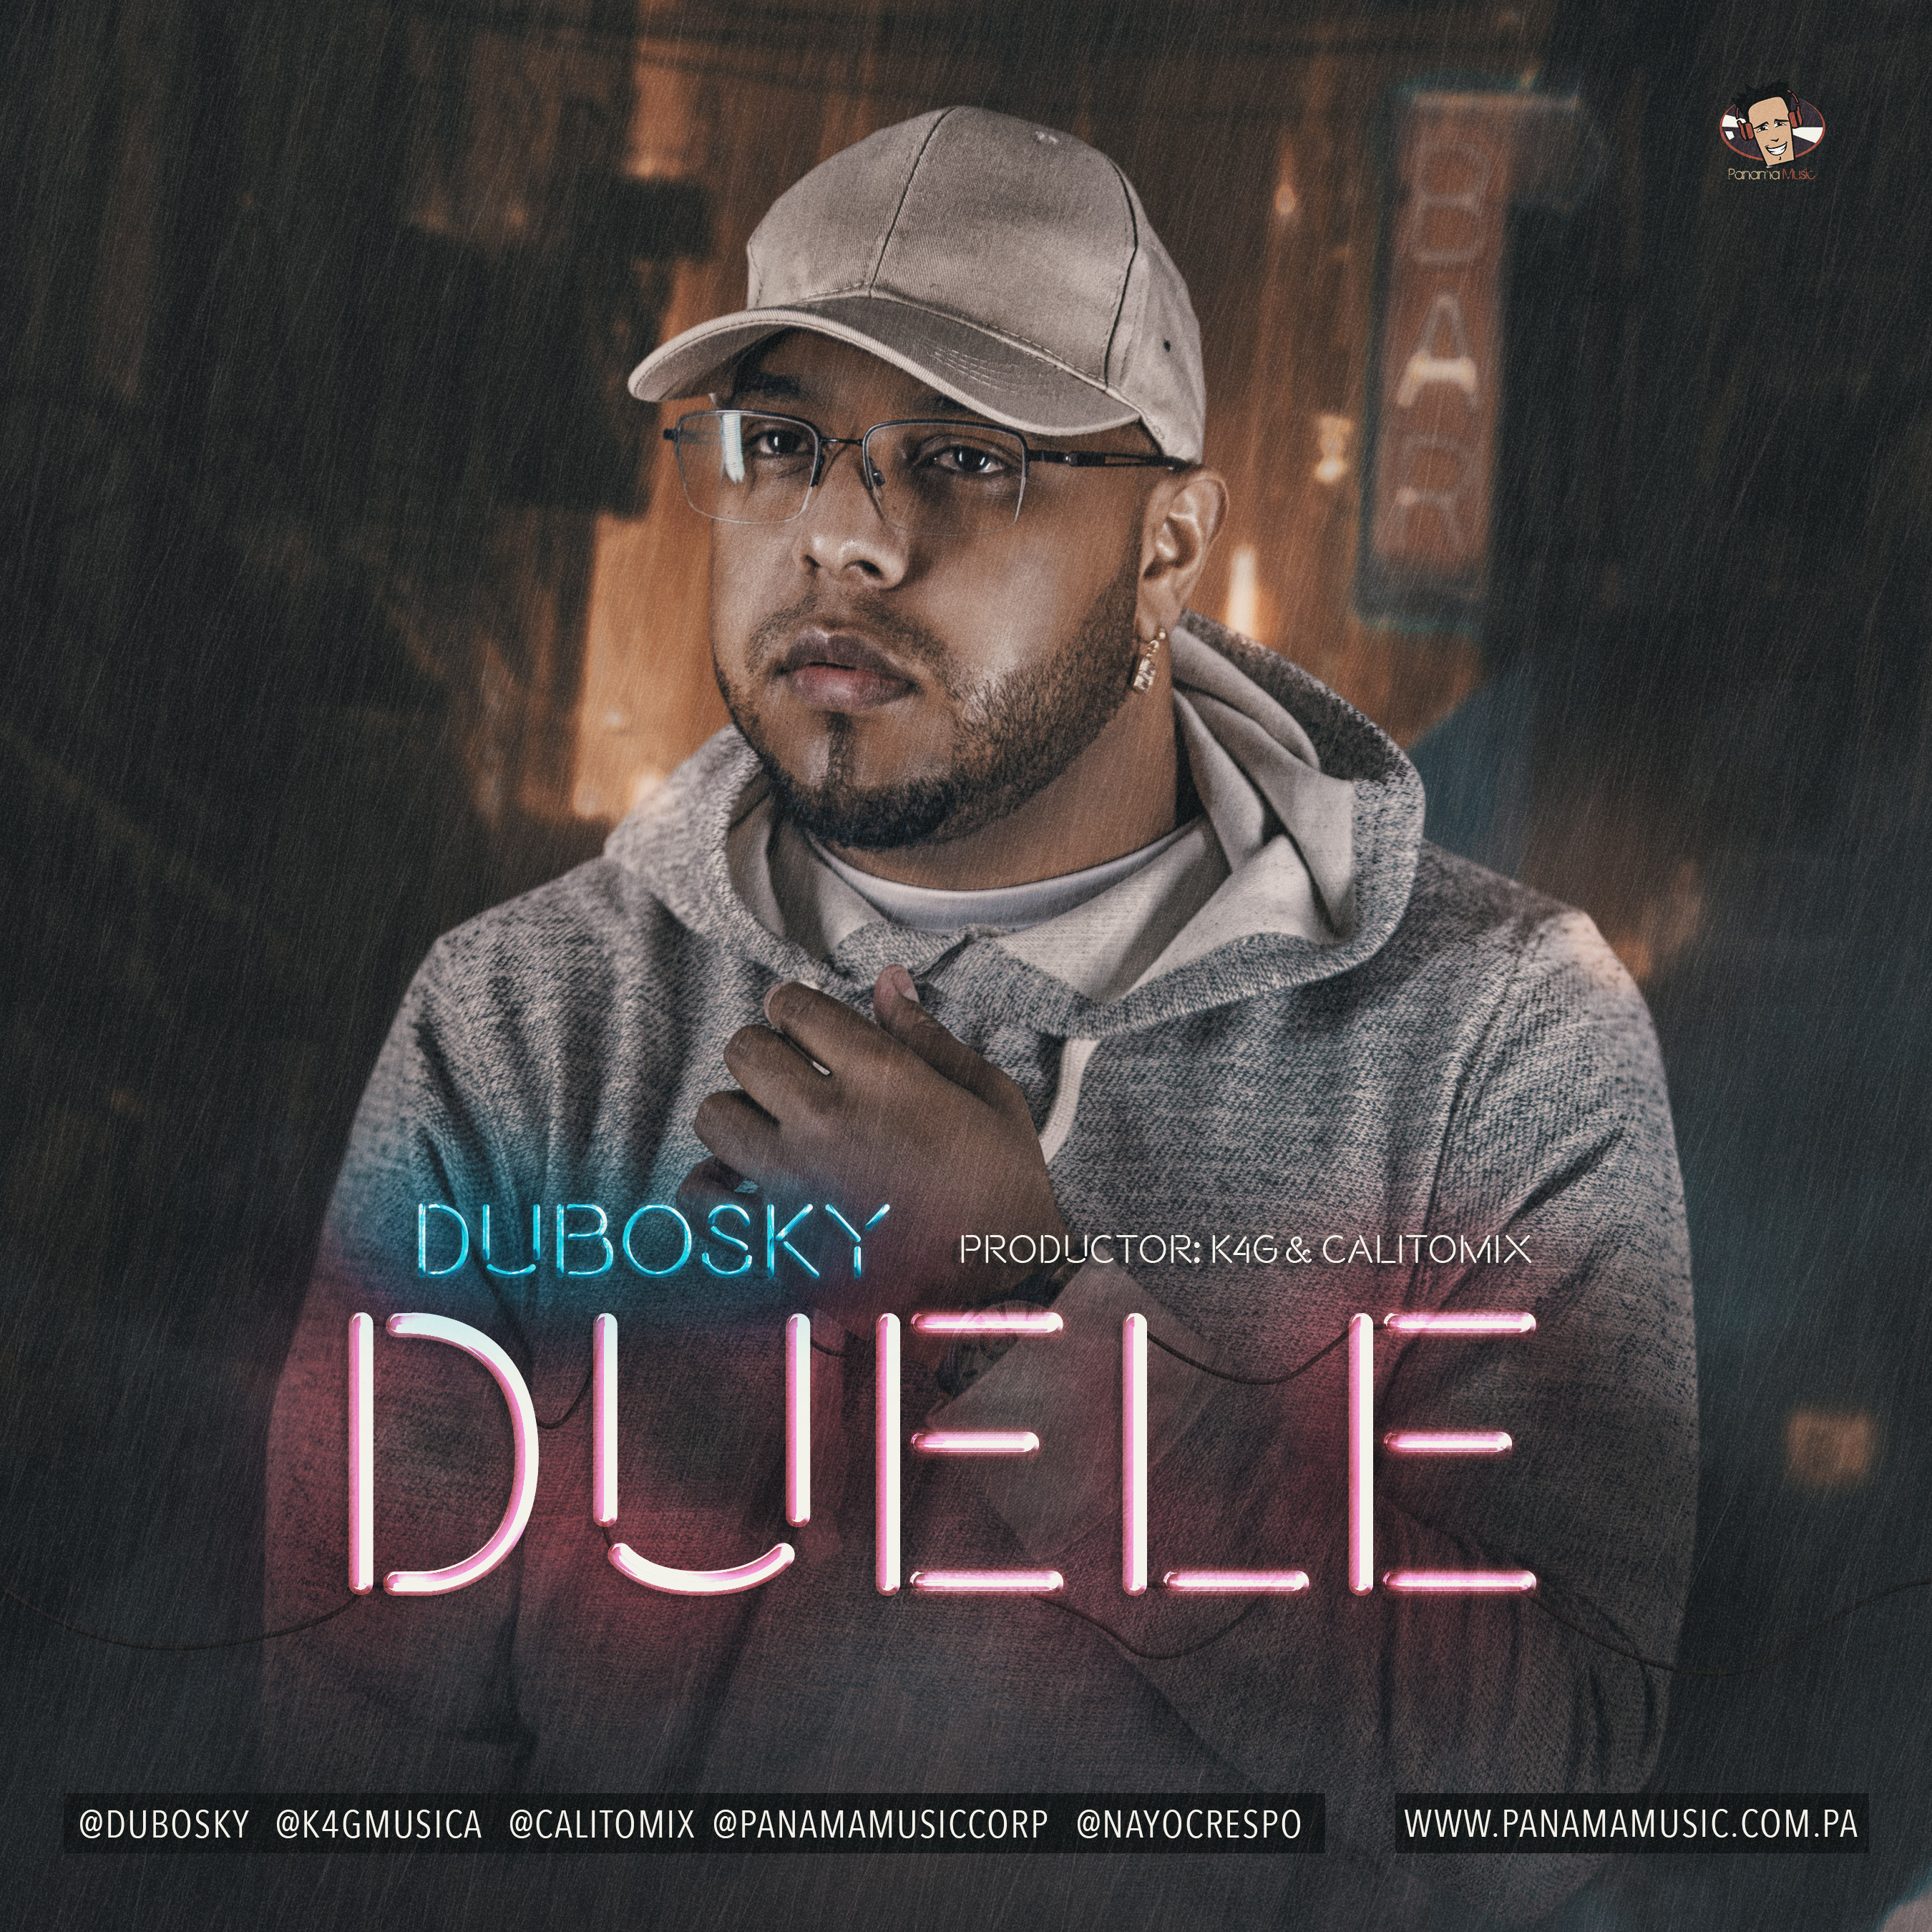 Dubosky - Duele.mp3